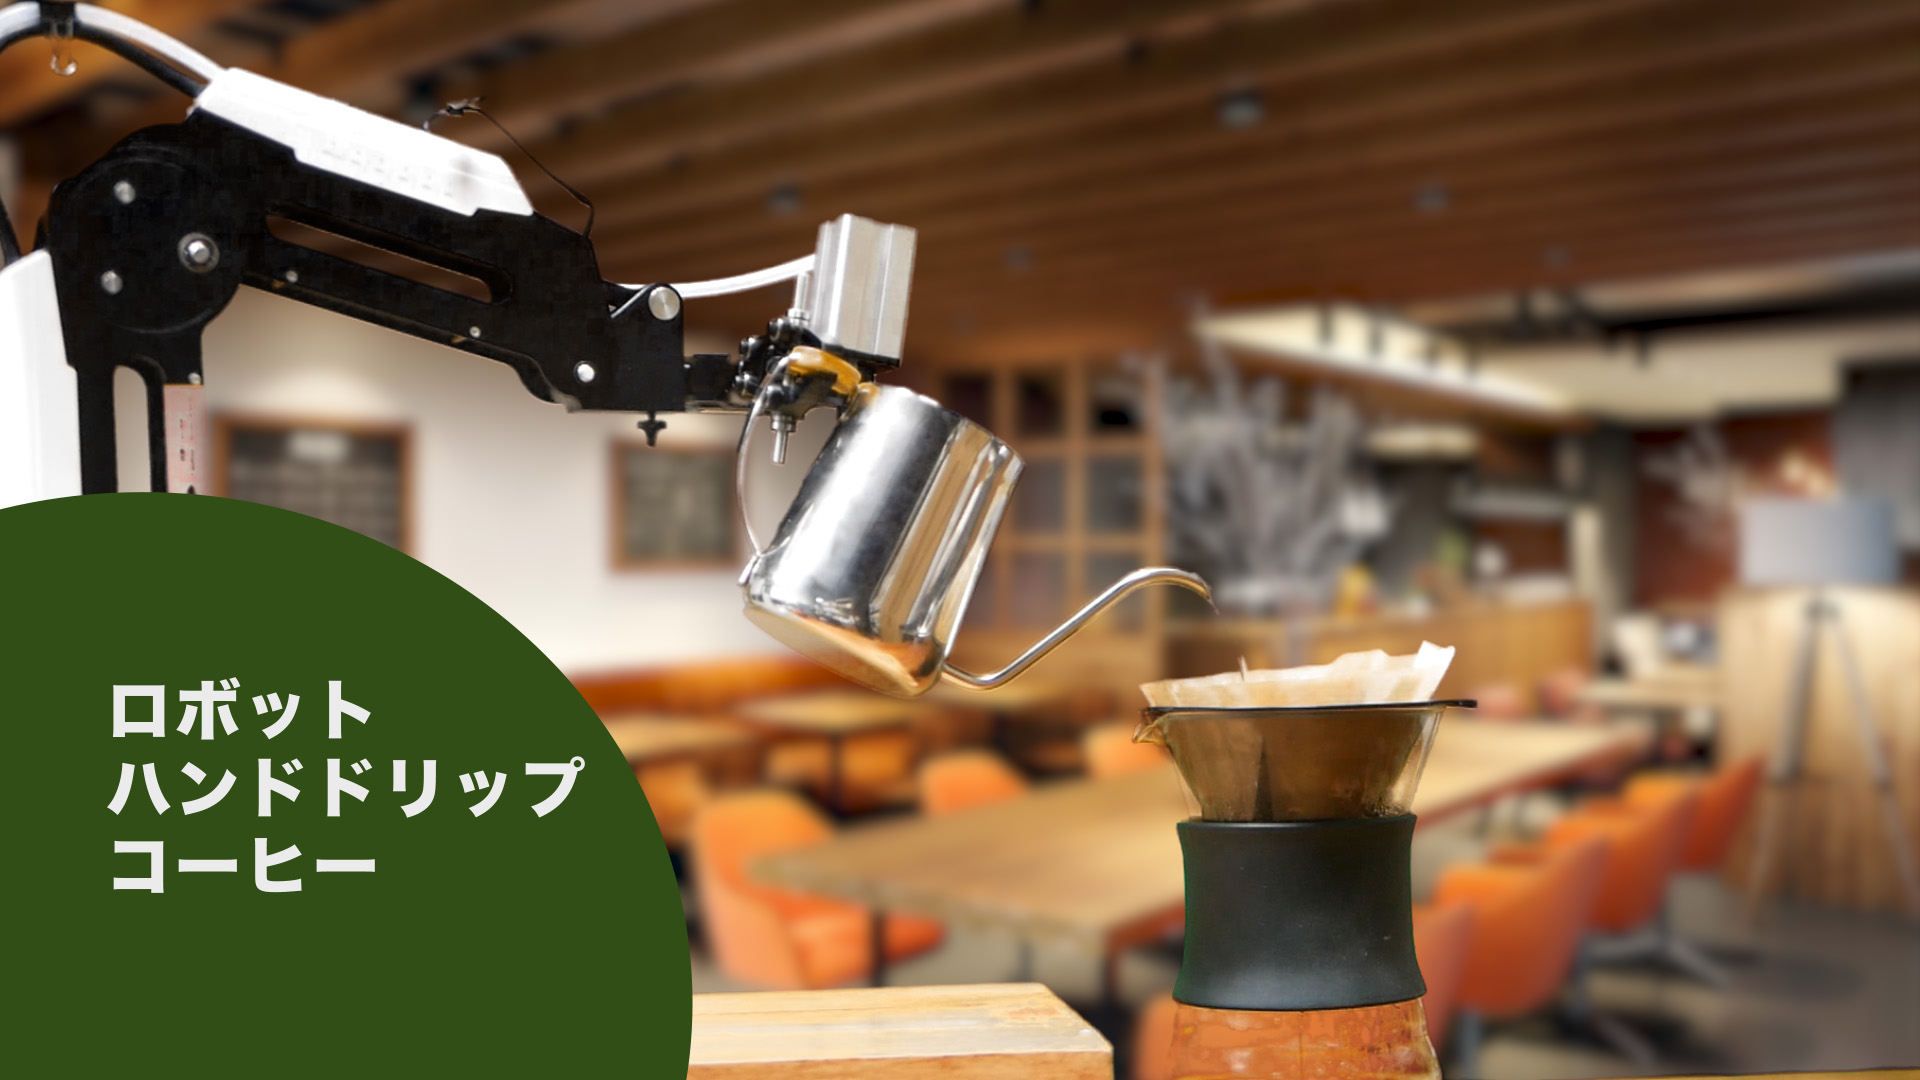 小型ロボットアームでハンドドリップコーヒー Dobot Magician